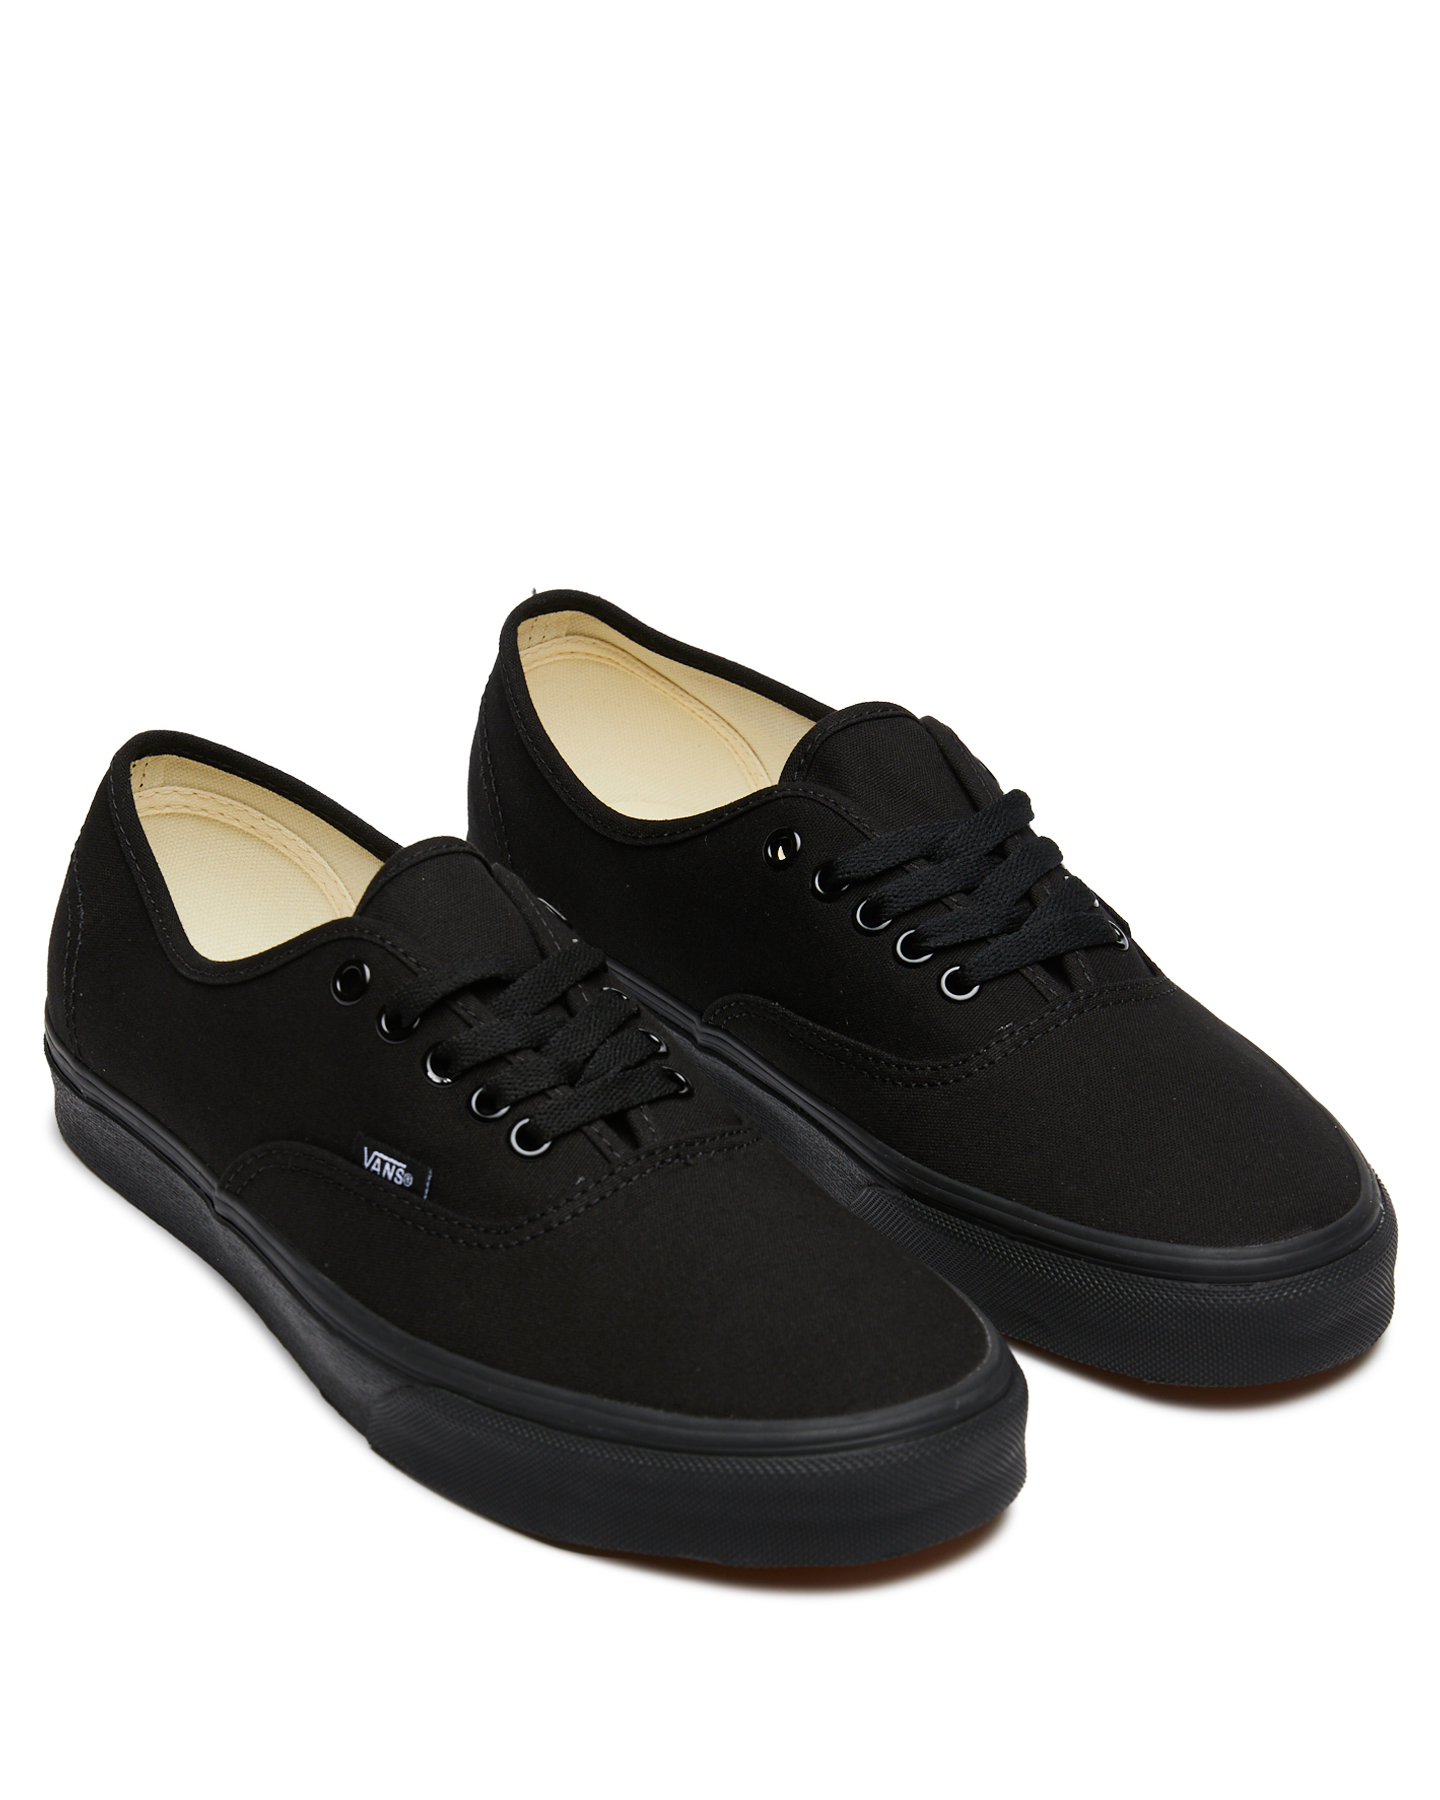 Vans Womens Authentic Shoe - Black Black | SurfStitch